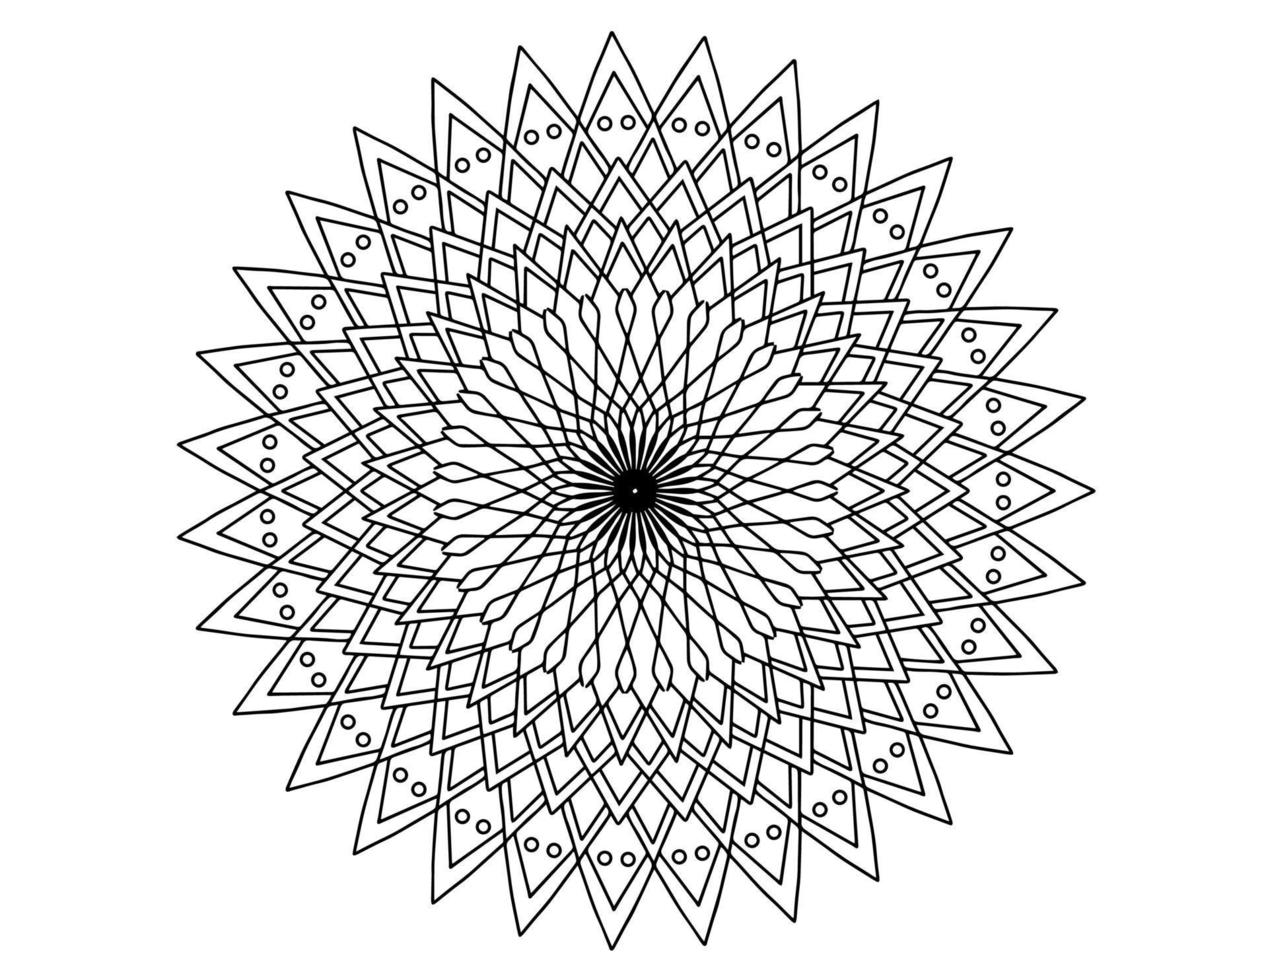 Mandala-Kunst schwarz und weiß, Malvorlagen, Dekoration, vektor